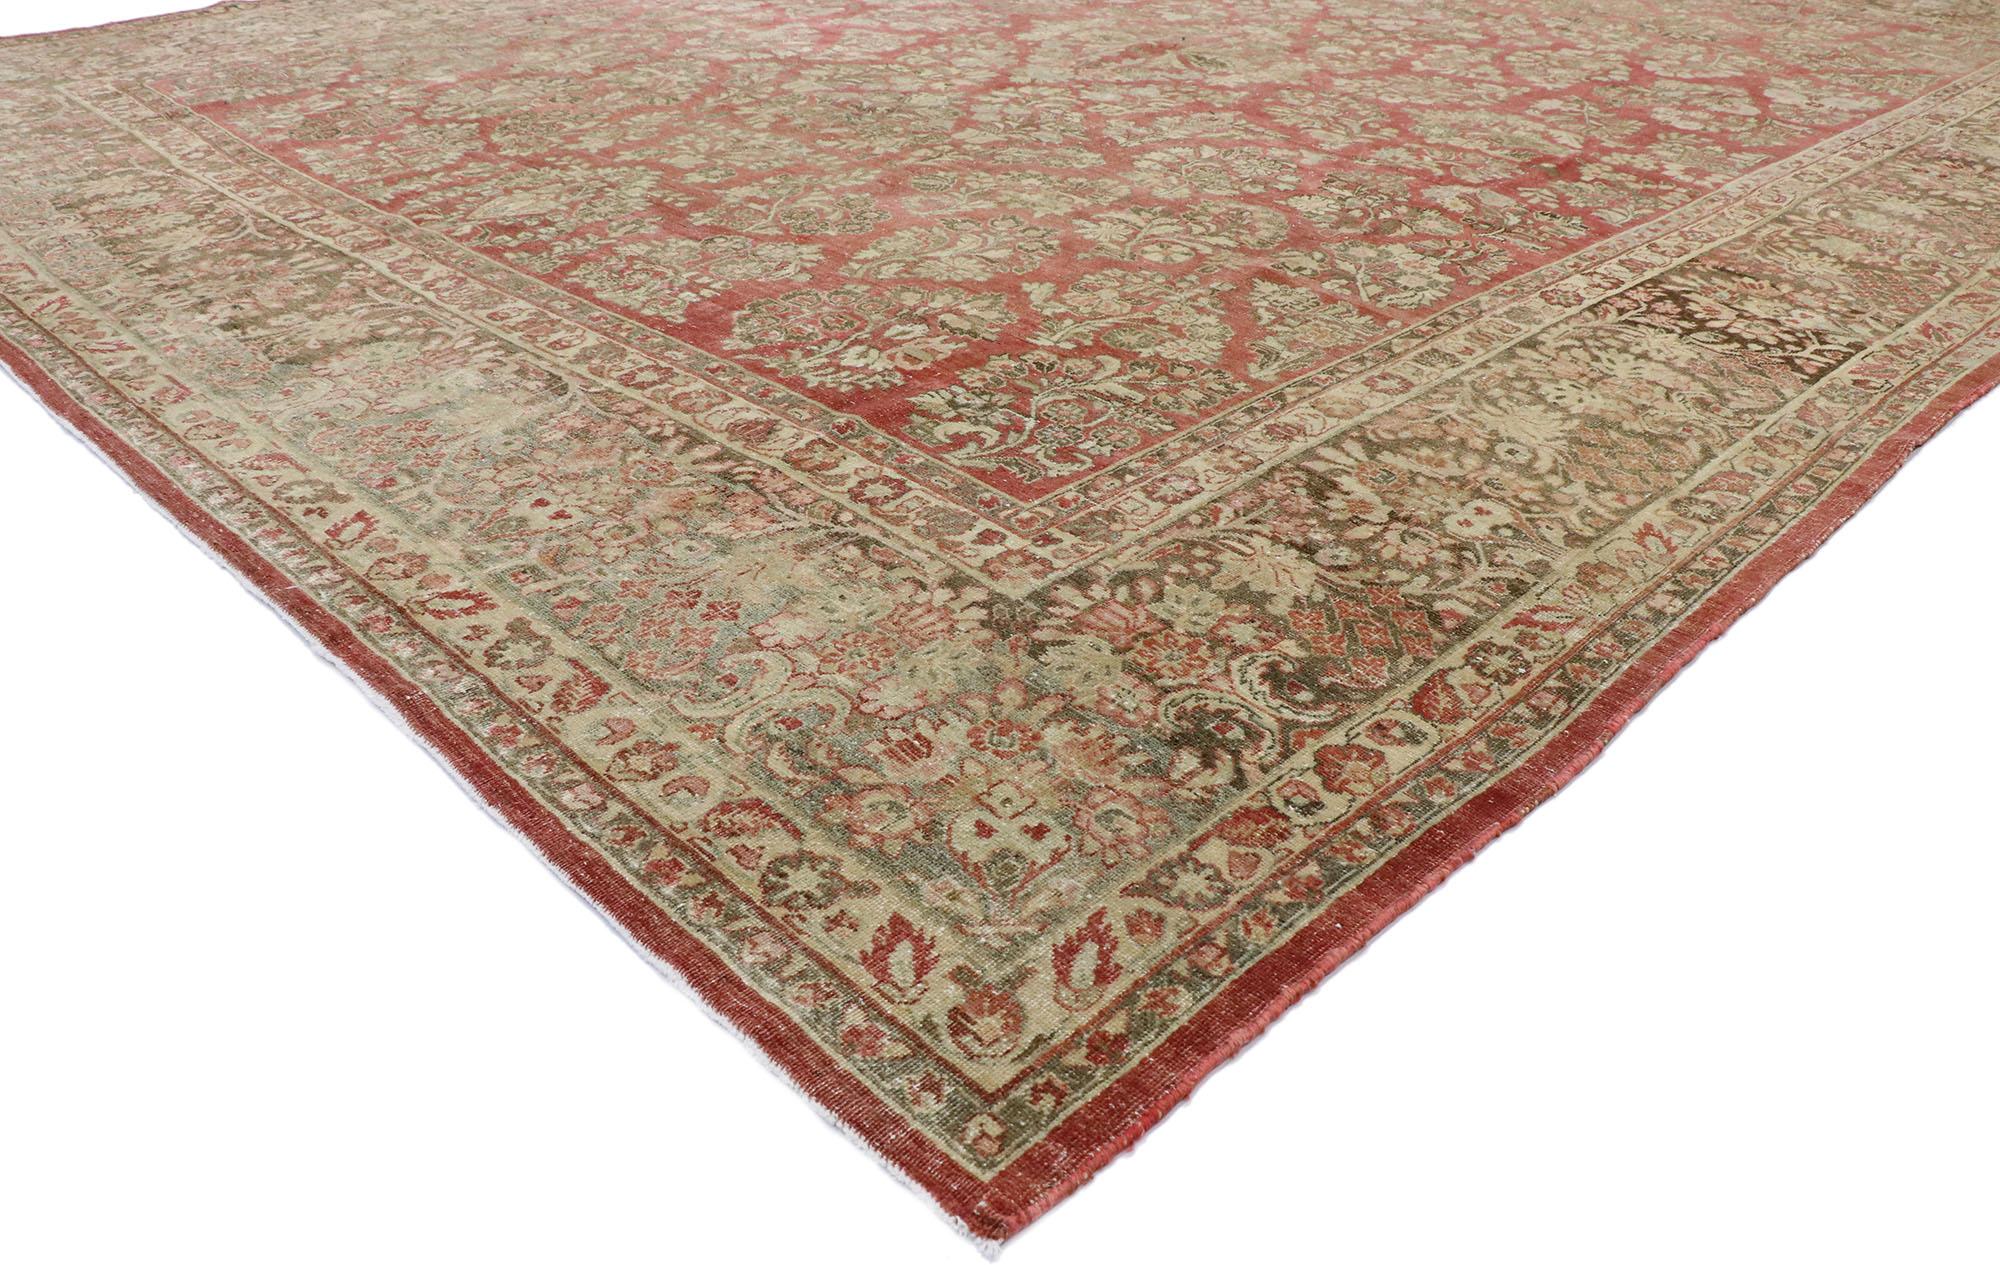 53445, gealterter antiker persischer Sarouk-Teppich im rustikalen, traditionellen amerikanischen Stil. Mit seiner zeitlosen Anziehungskraft, den sanften Farben und den naturalistischen Designelementen passt dieser handgeknüpfte, antike